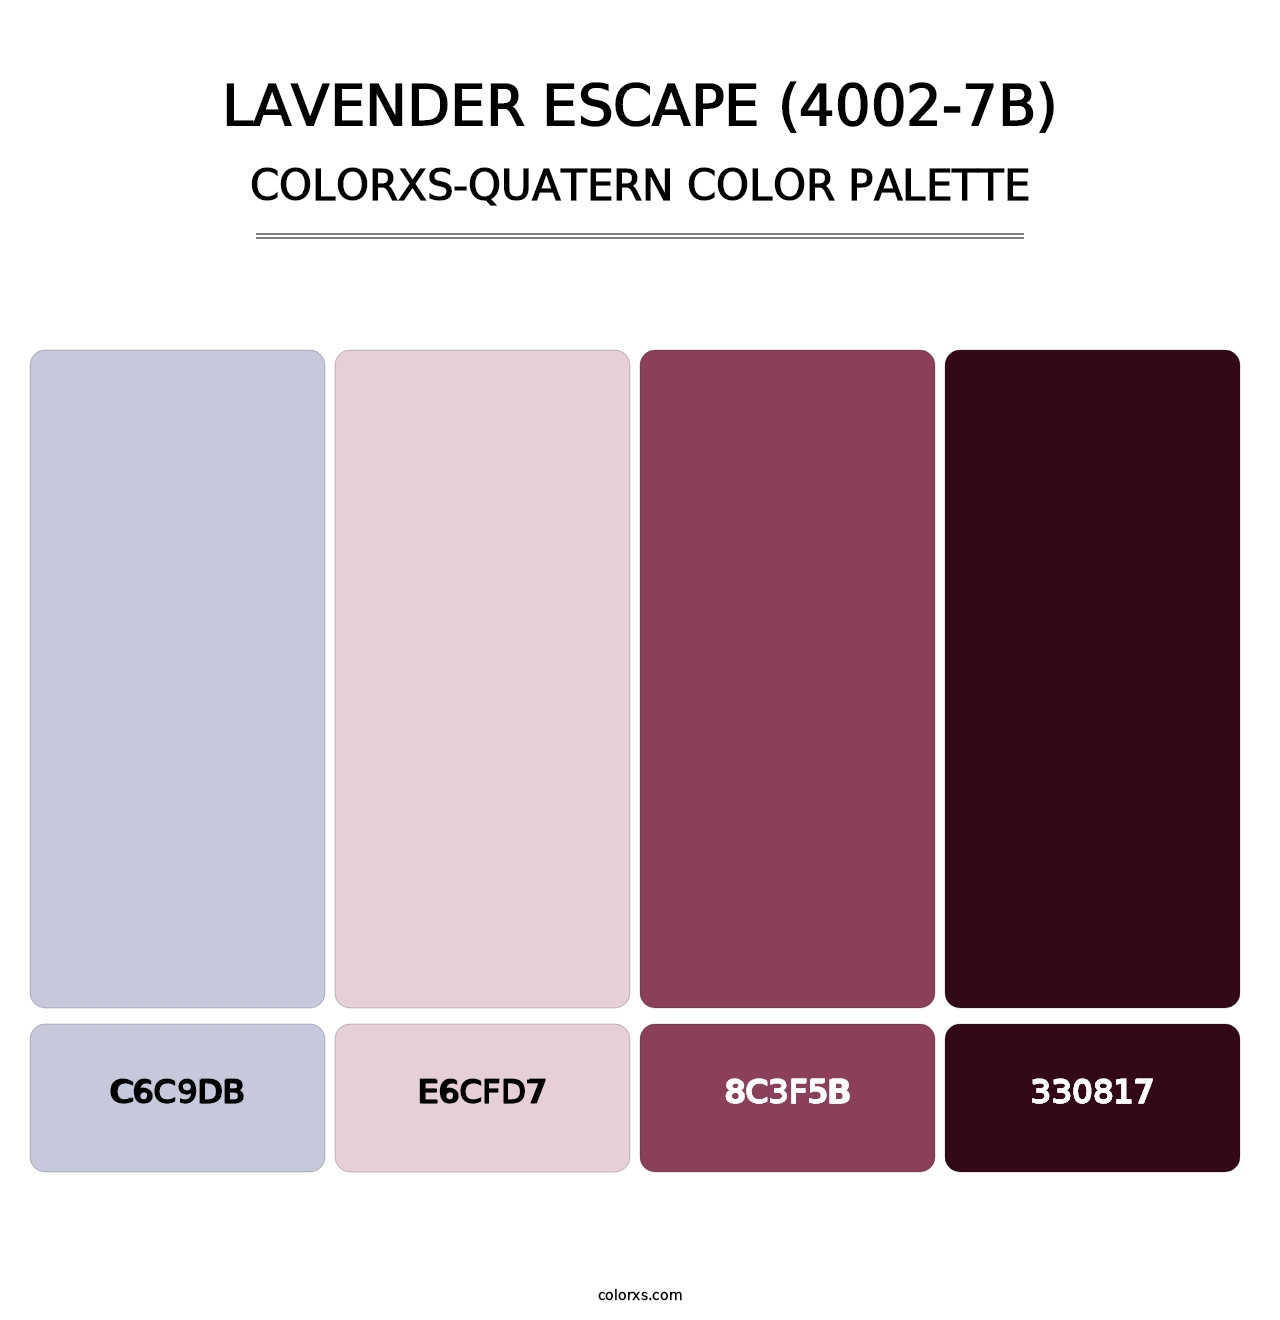 Lavender Escape (4002-7B) - Colorxs Quatern Palette